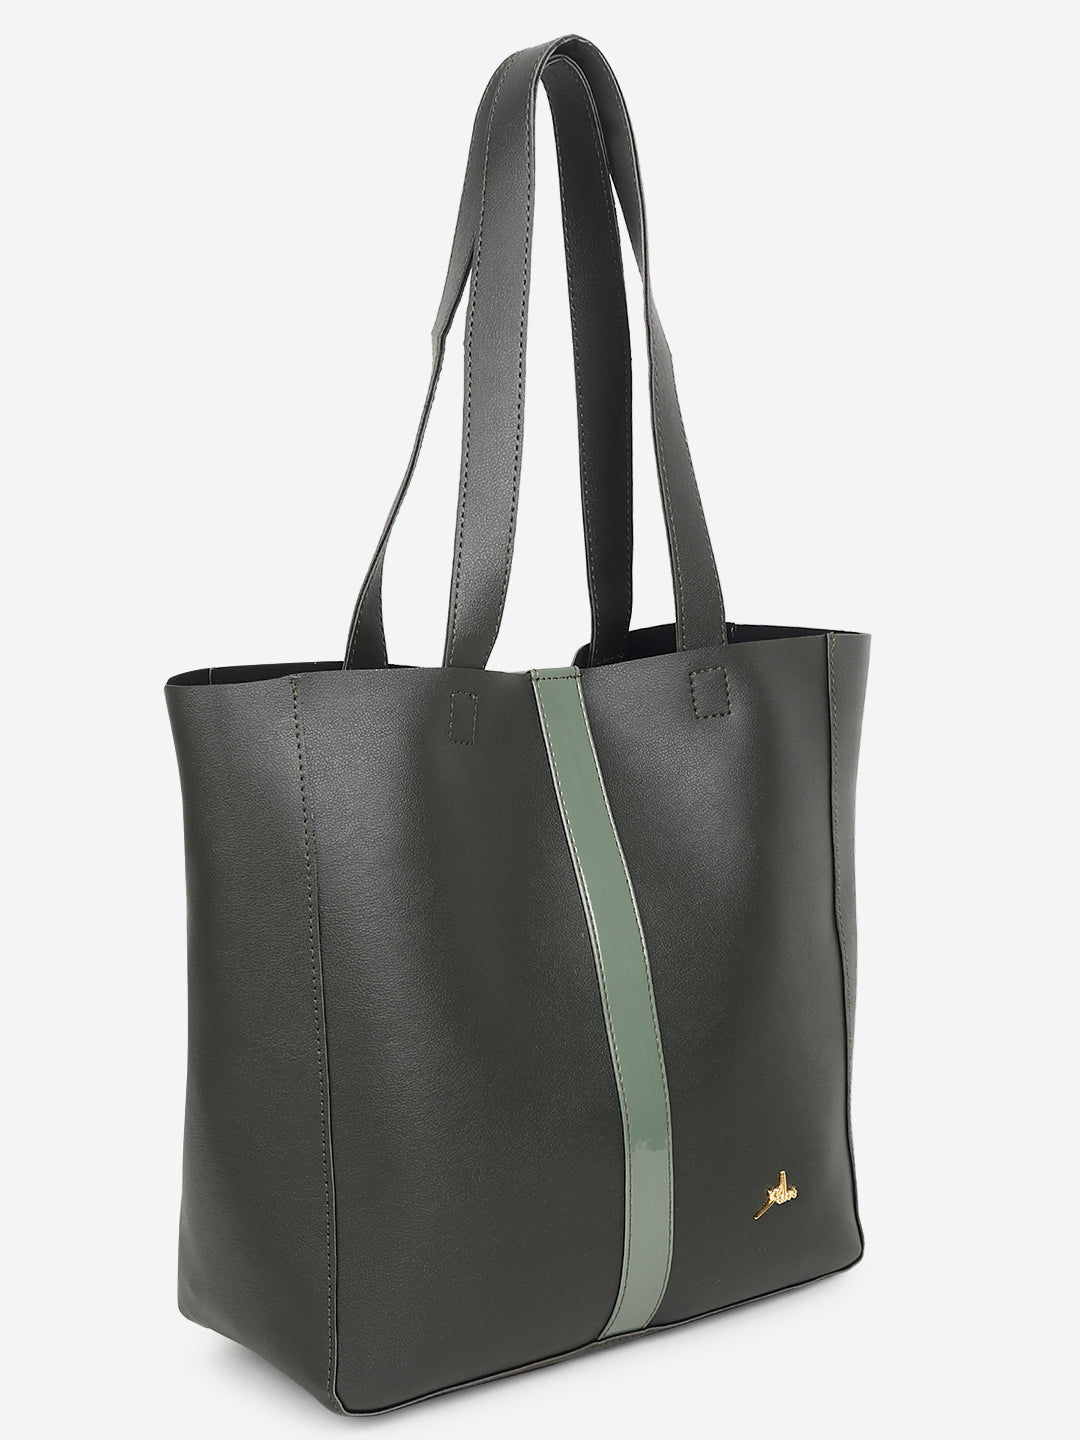 Bag in Bag shoulder Tote bag Green